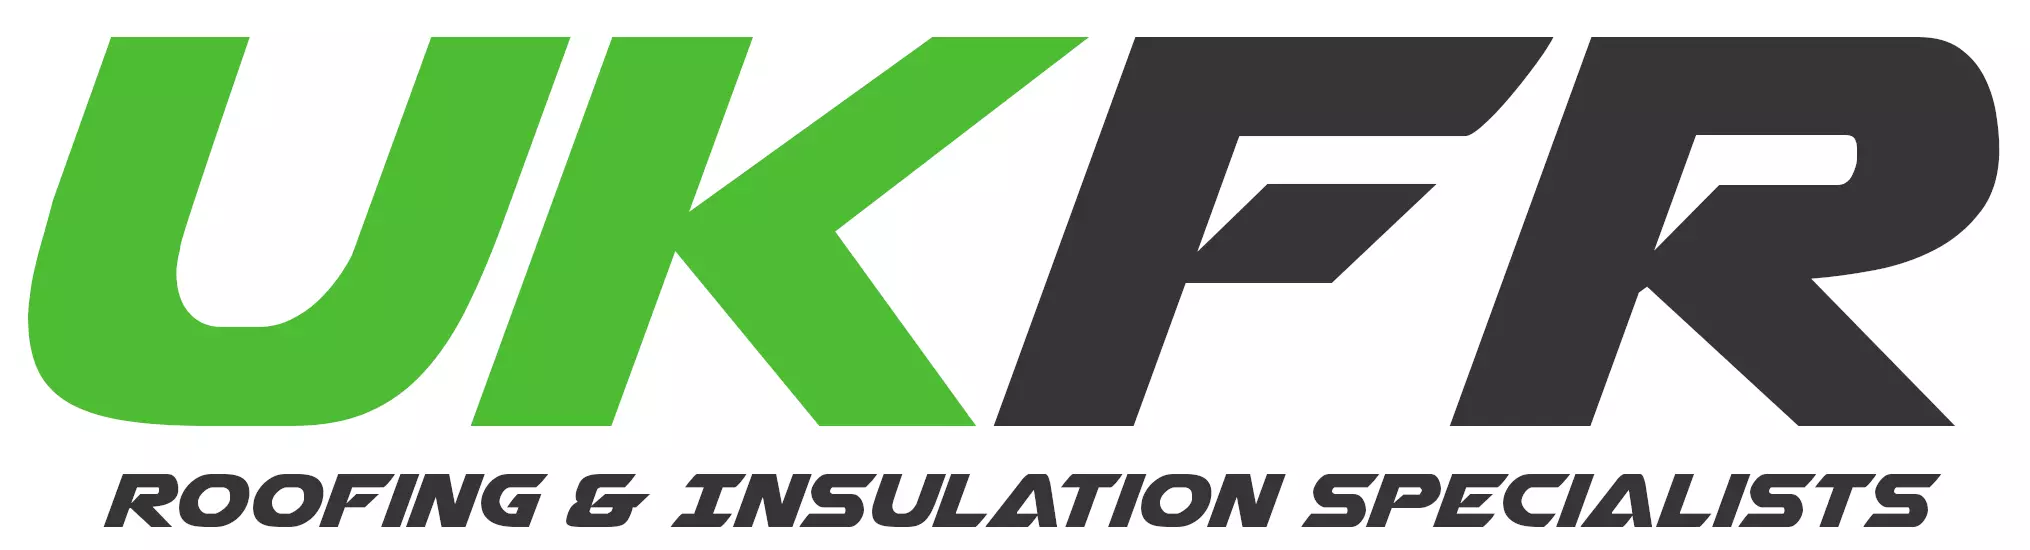 UKFR - Roofing & Insulation Specialists